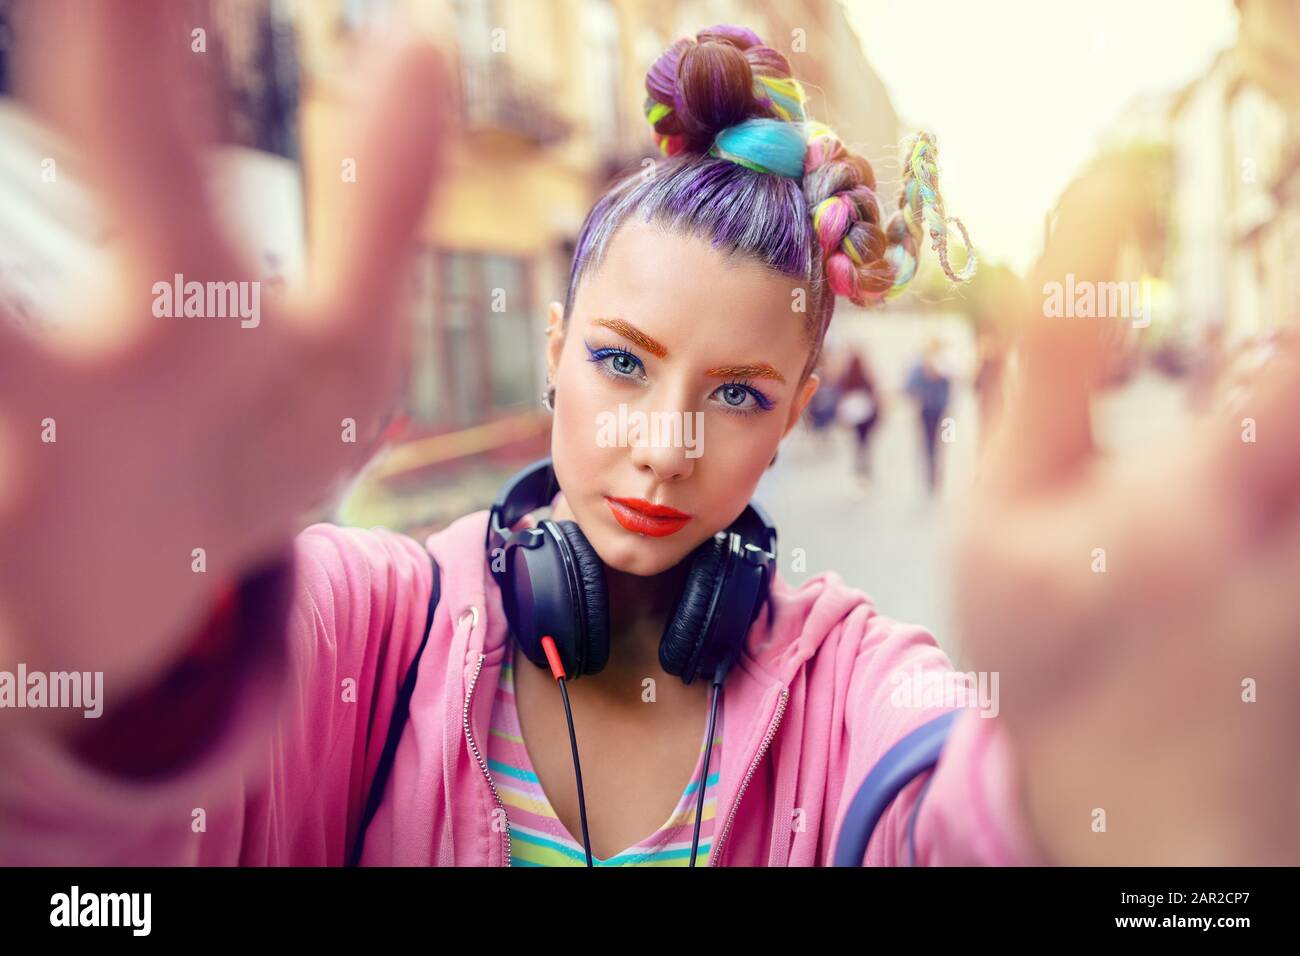 Verspieltes cooles hippy junges Mädchen mit Kopfhörern und verrückten Haaren, die selfie auf der Straße einnehmen Stockfoto